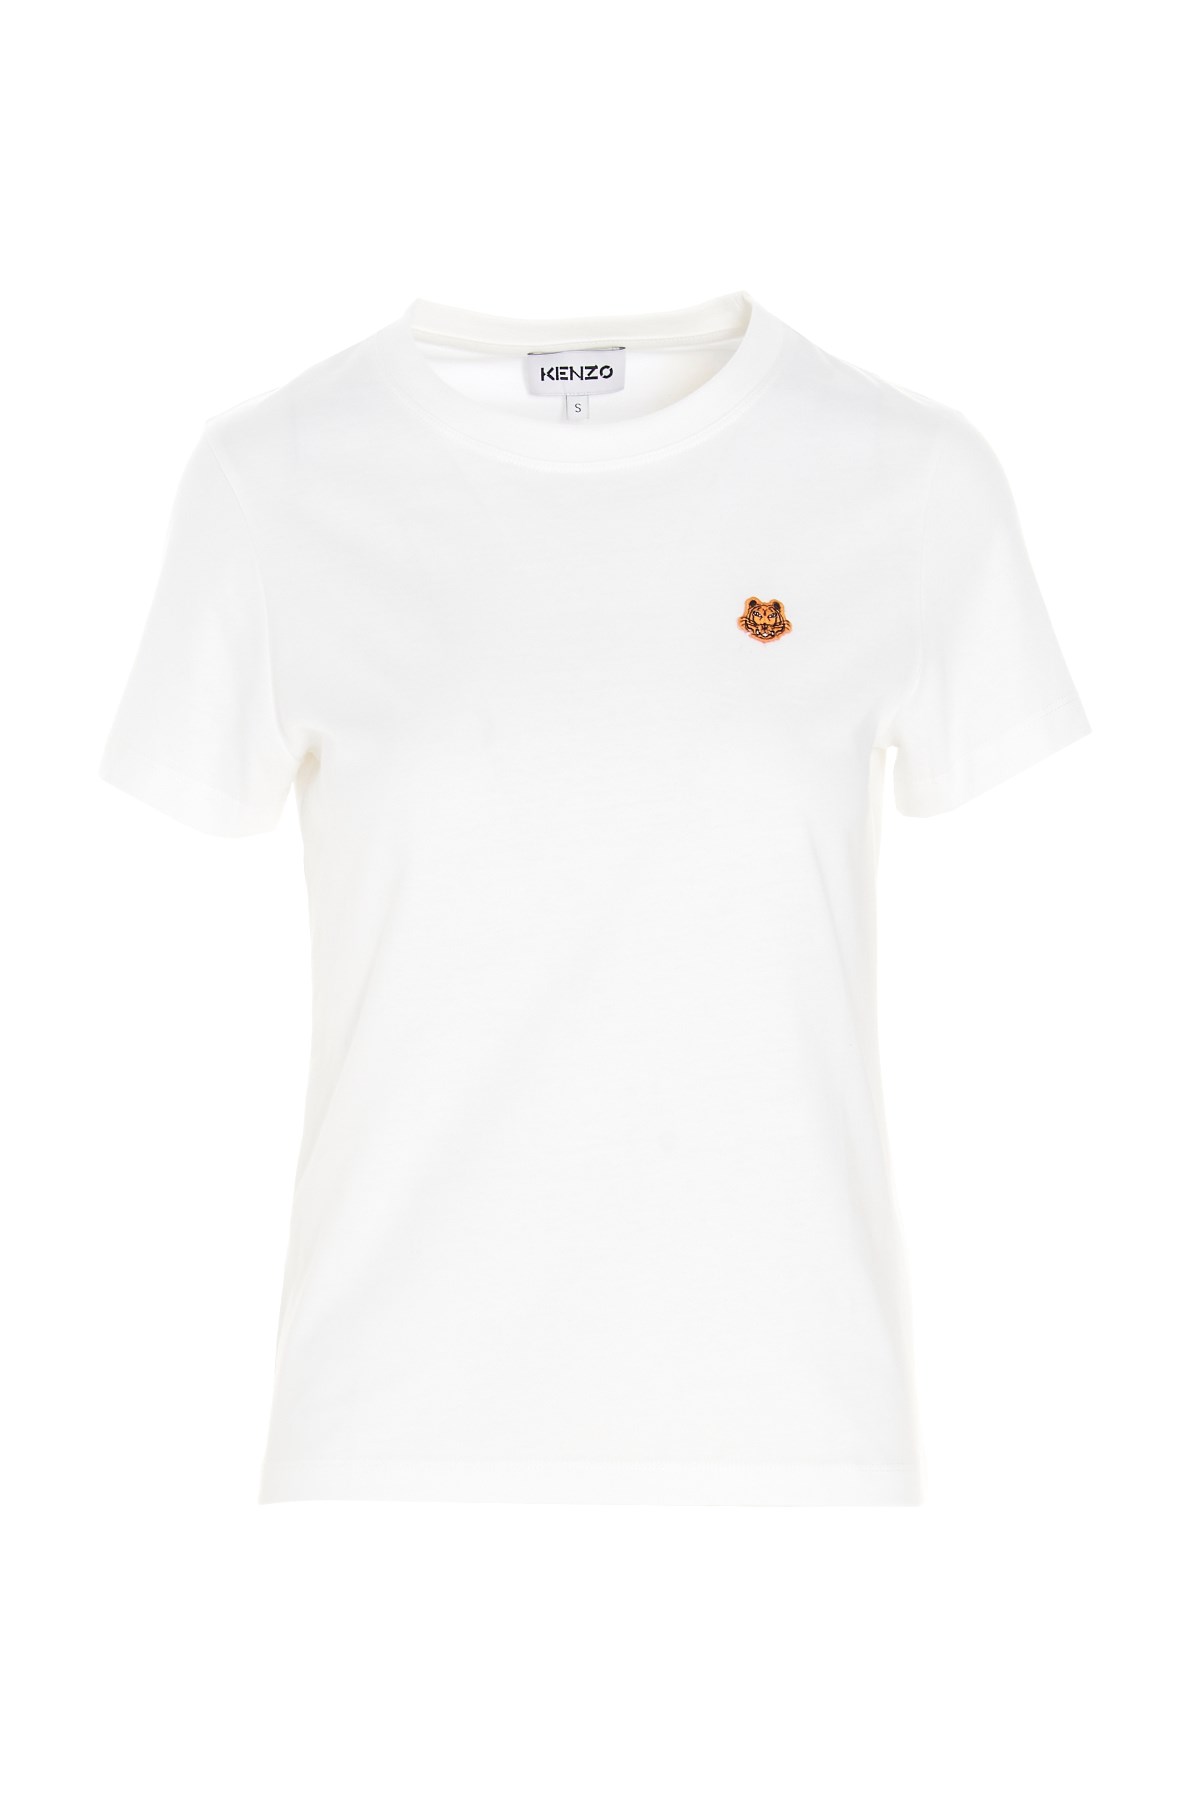 KENZO ‘Crest Classic’ T-Shirt